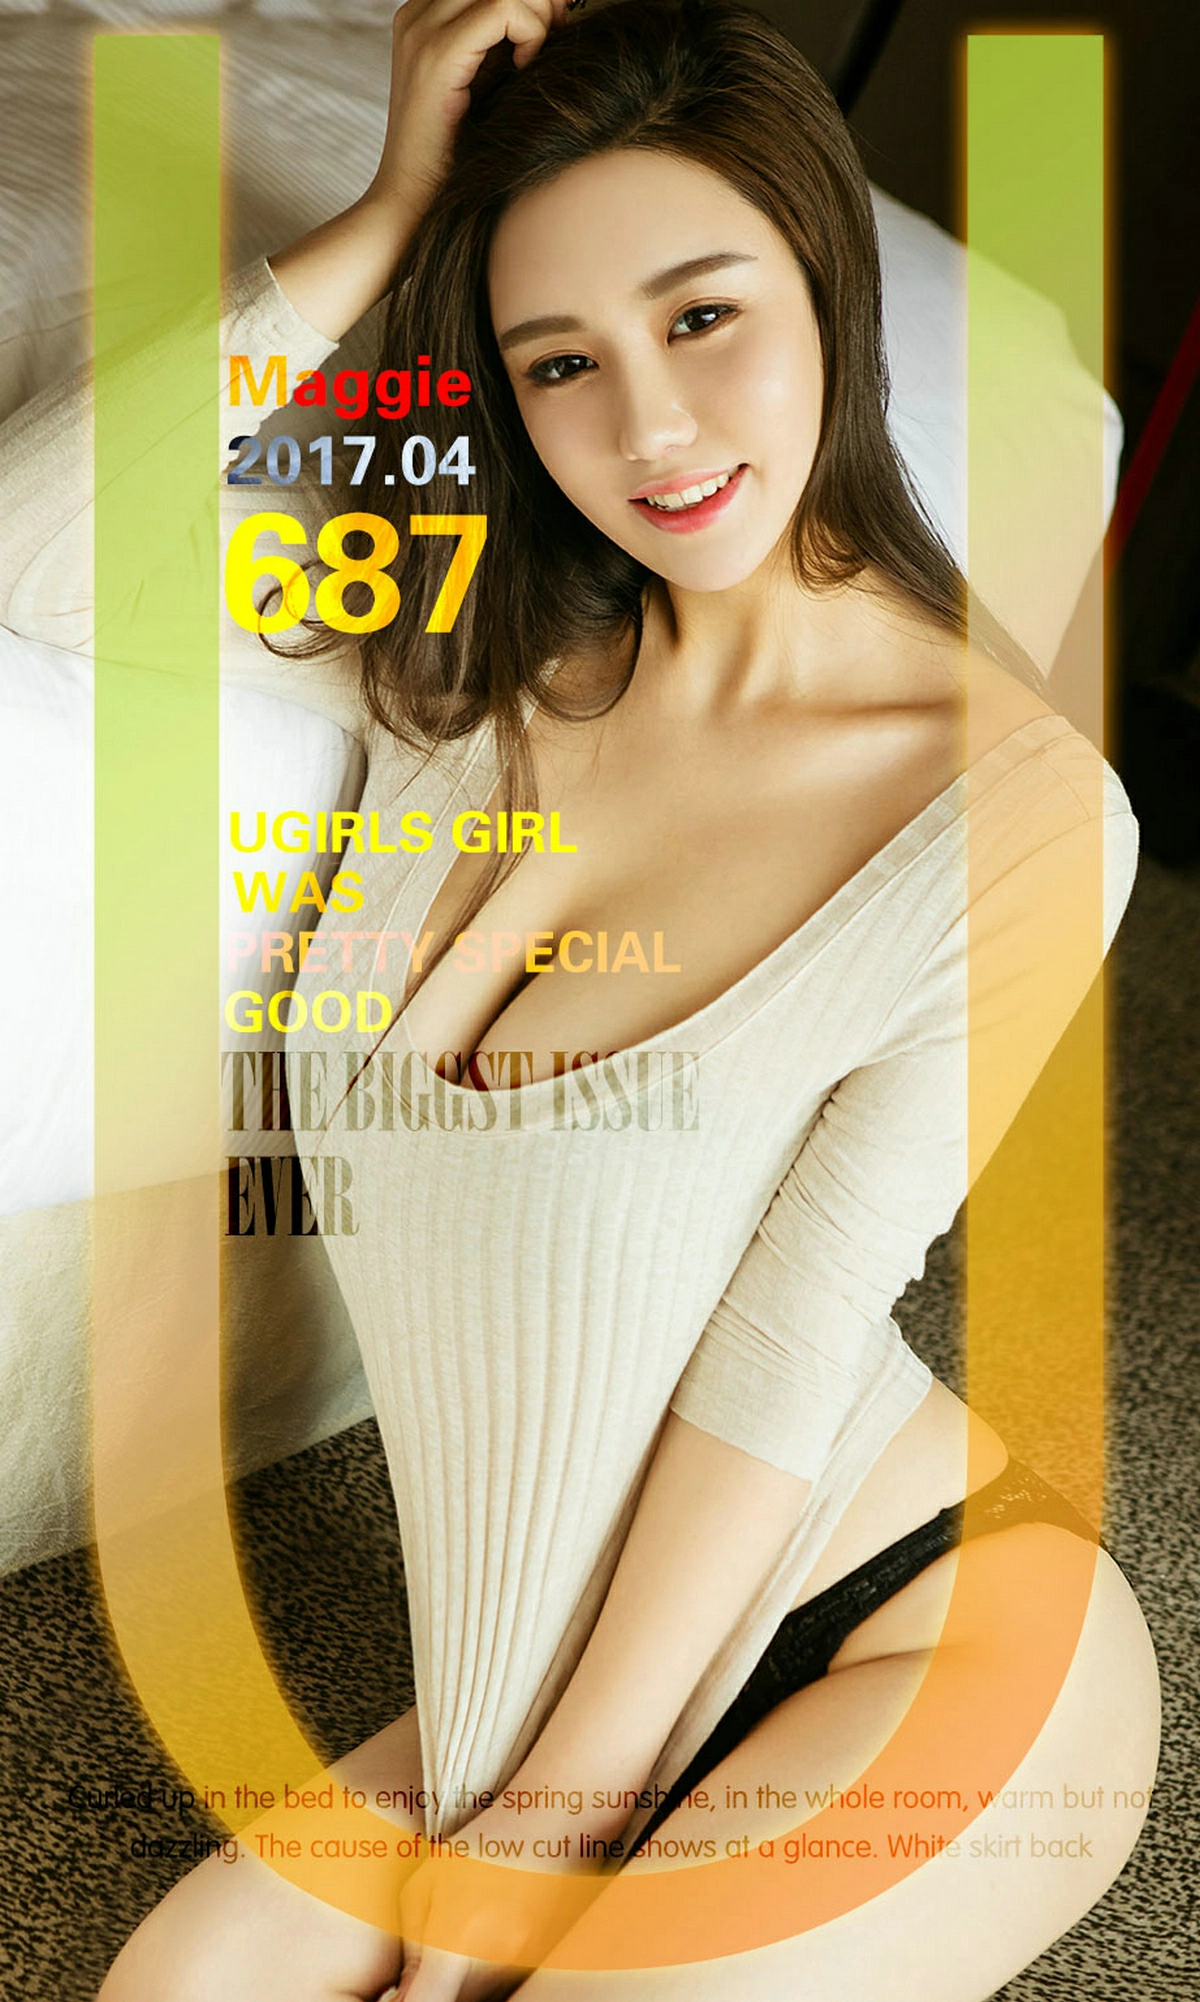 [爱尤物]2017 NO.687 背沟魂 Maggie 白色连衣裙与黑色蕾丝内衣性感写真集,0001